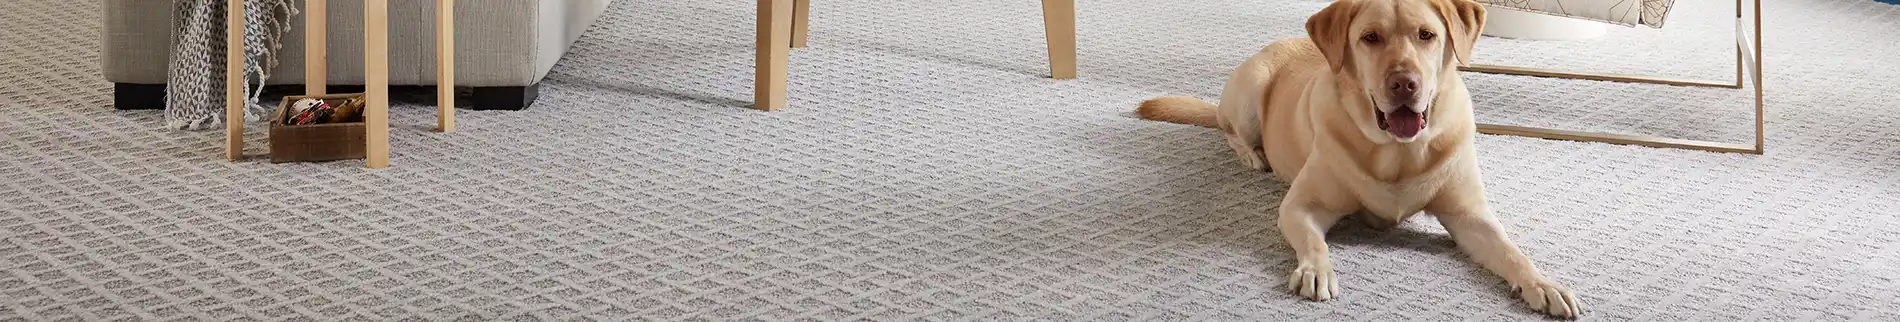 pet-friendly carpet